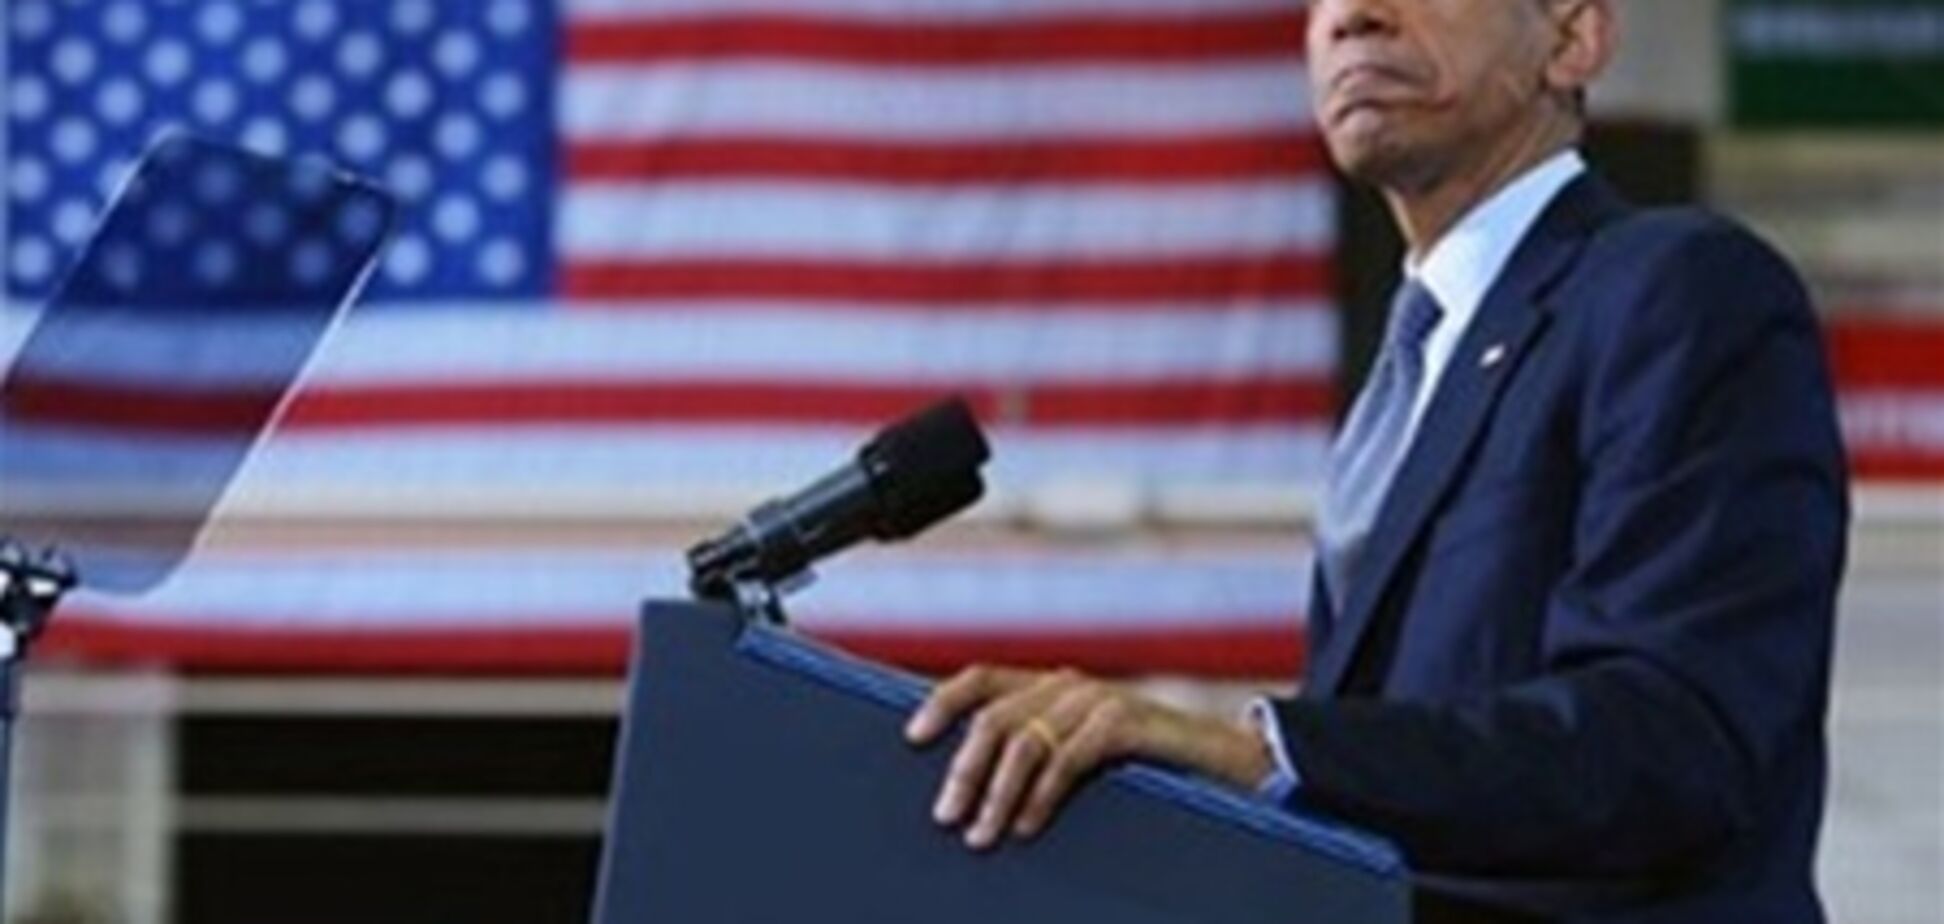 Обама со слезами на глазах убеждал американцев отказаться от оружия. Видео